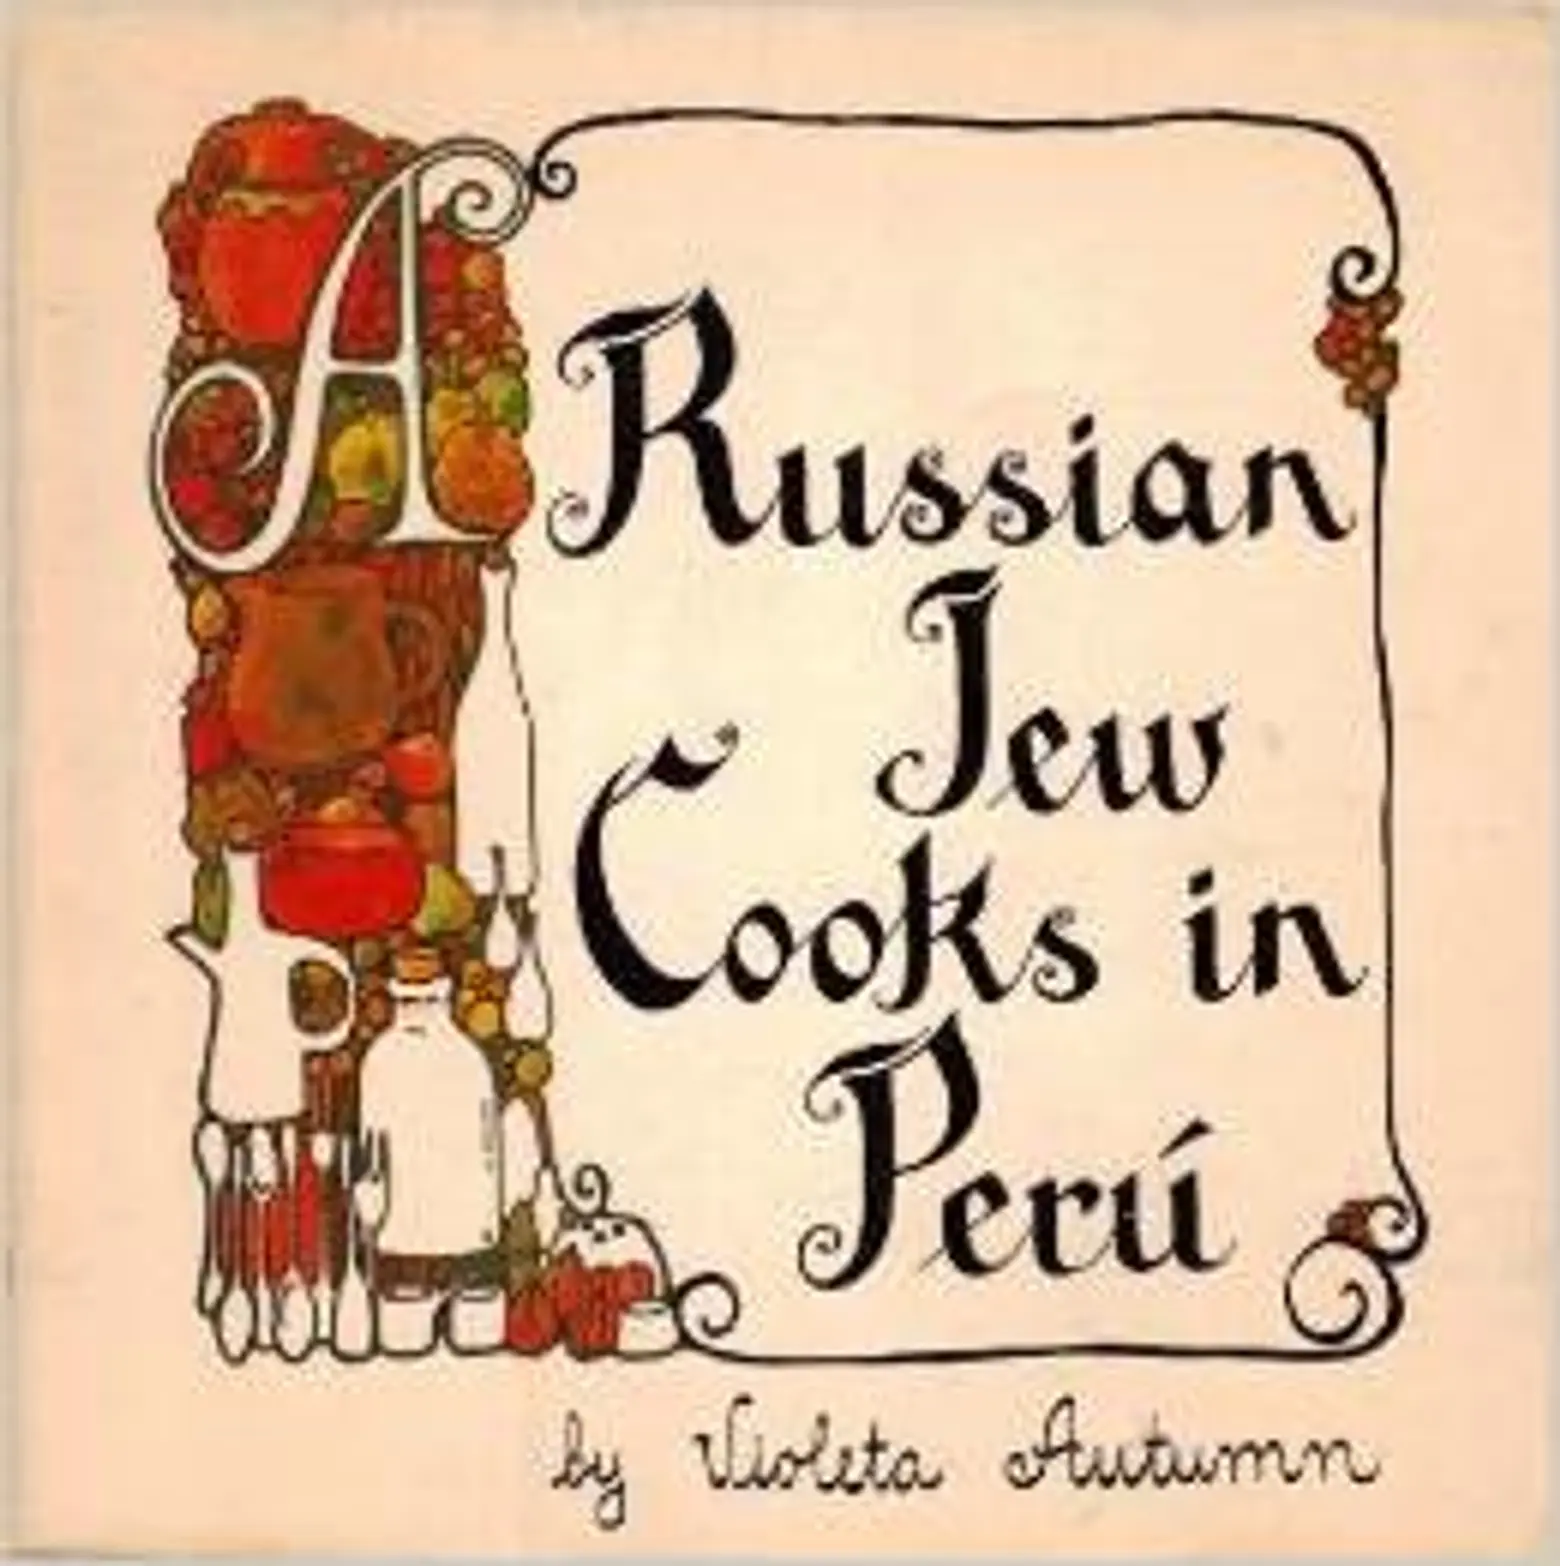 A Russian Jew Cooks In Peru